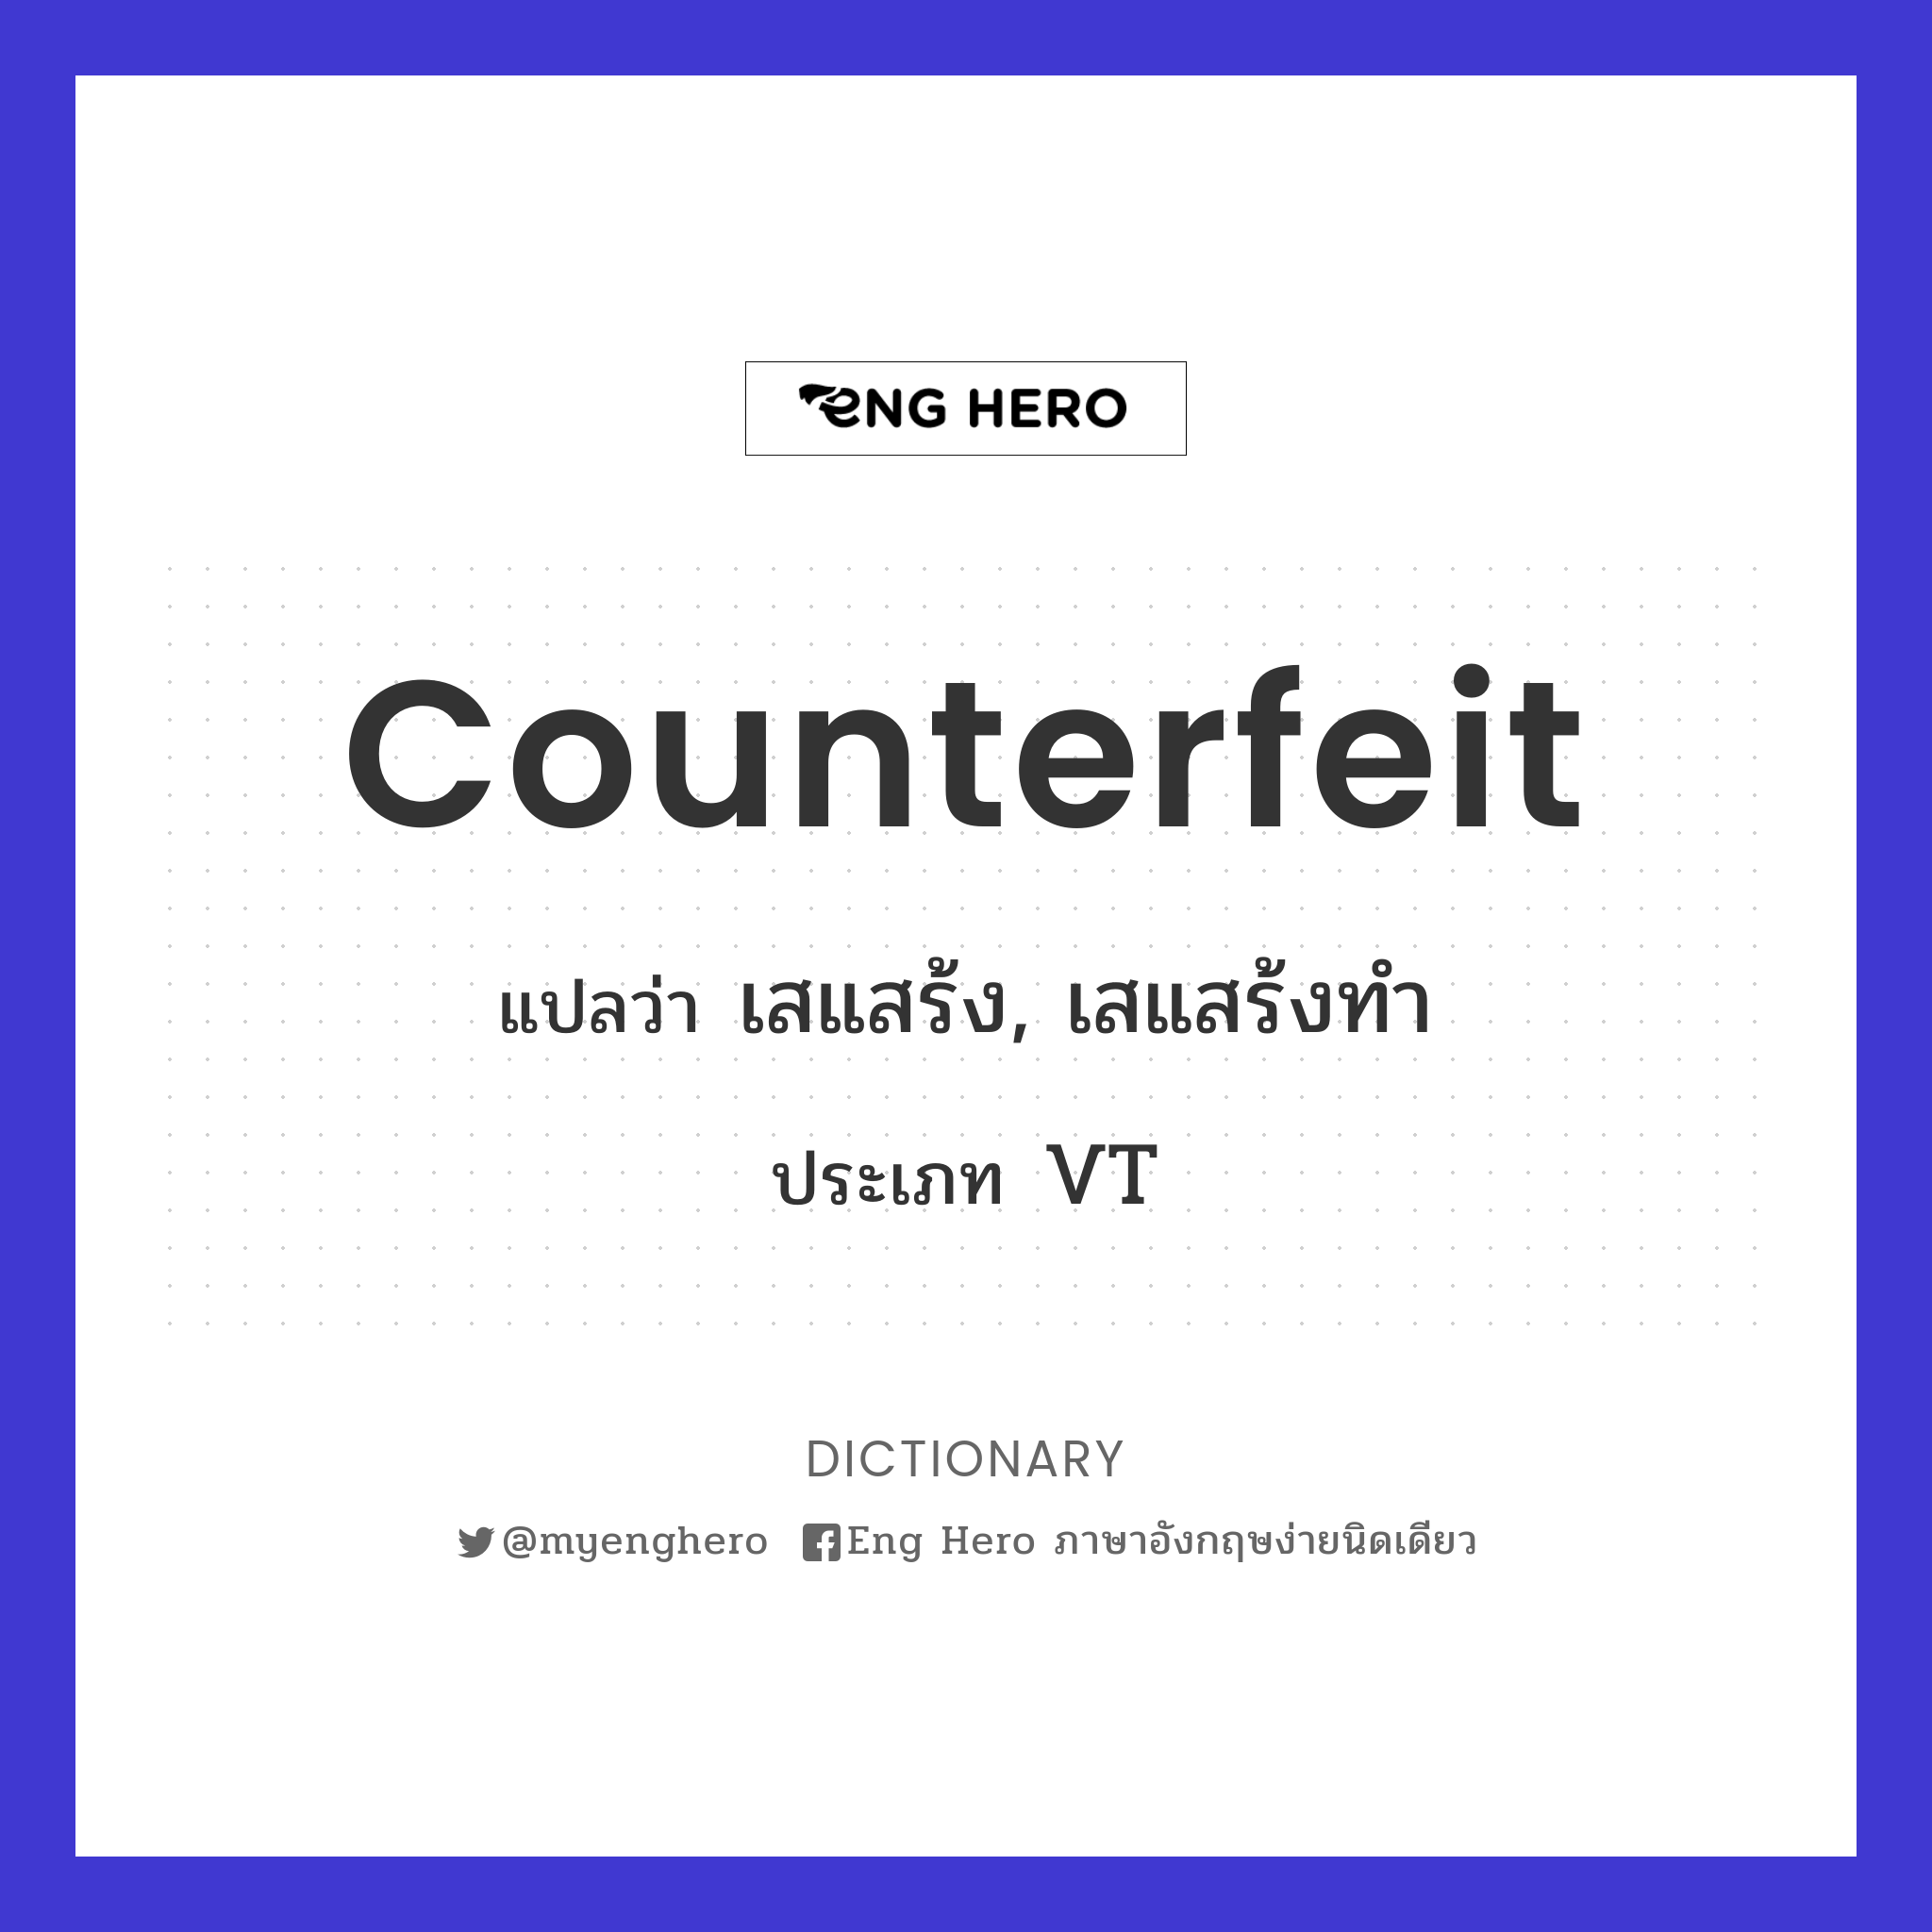 counterfeit